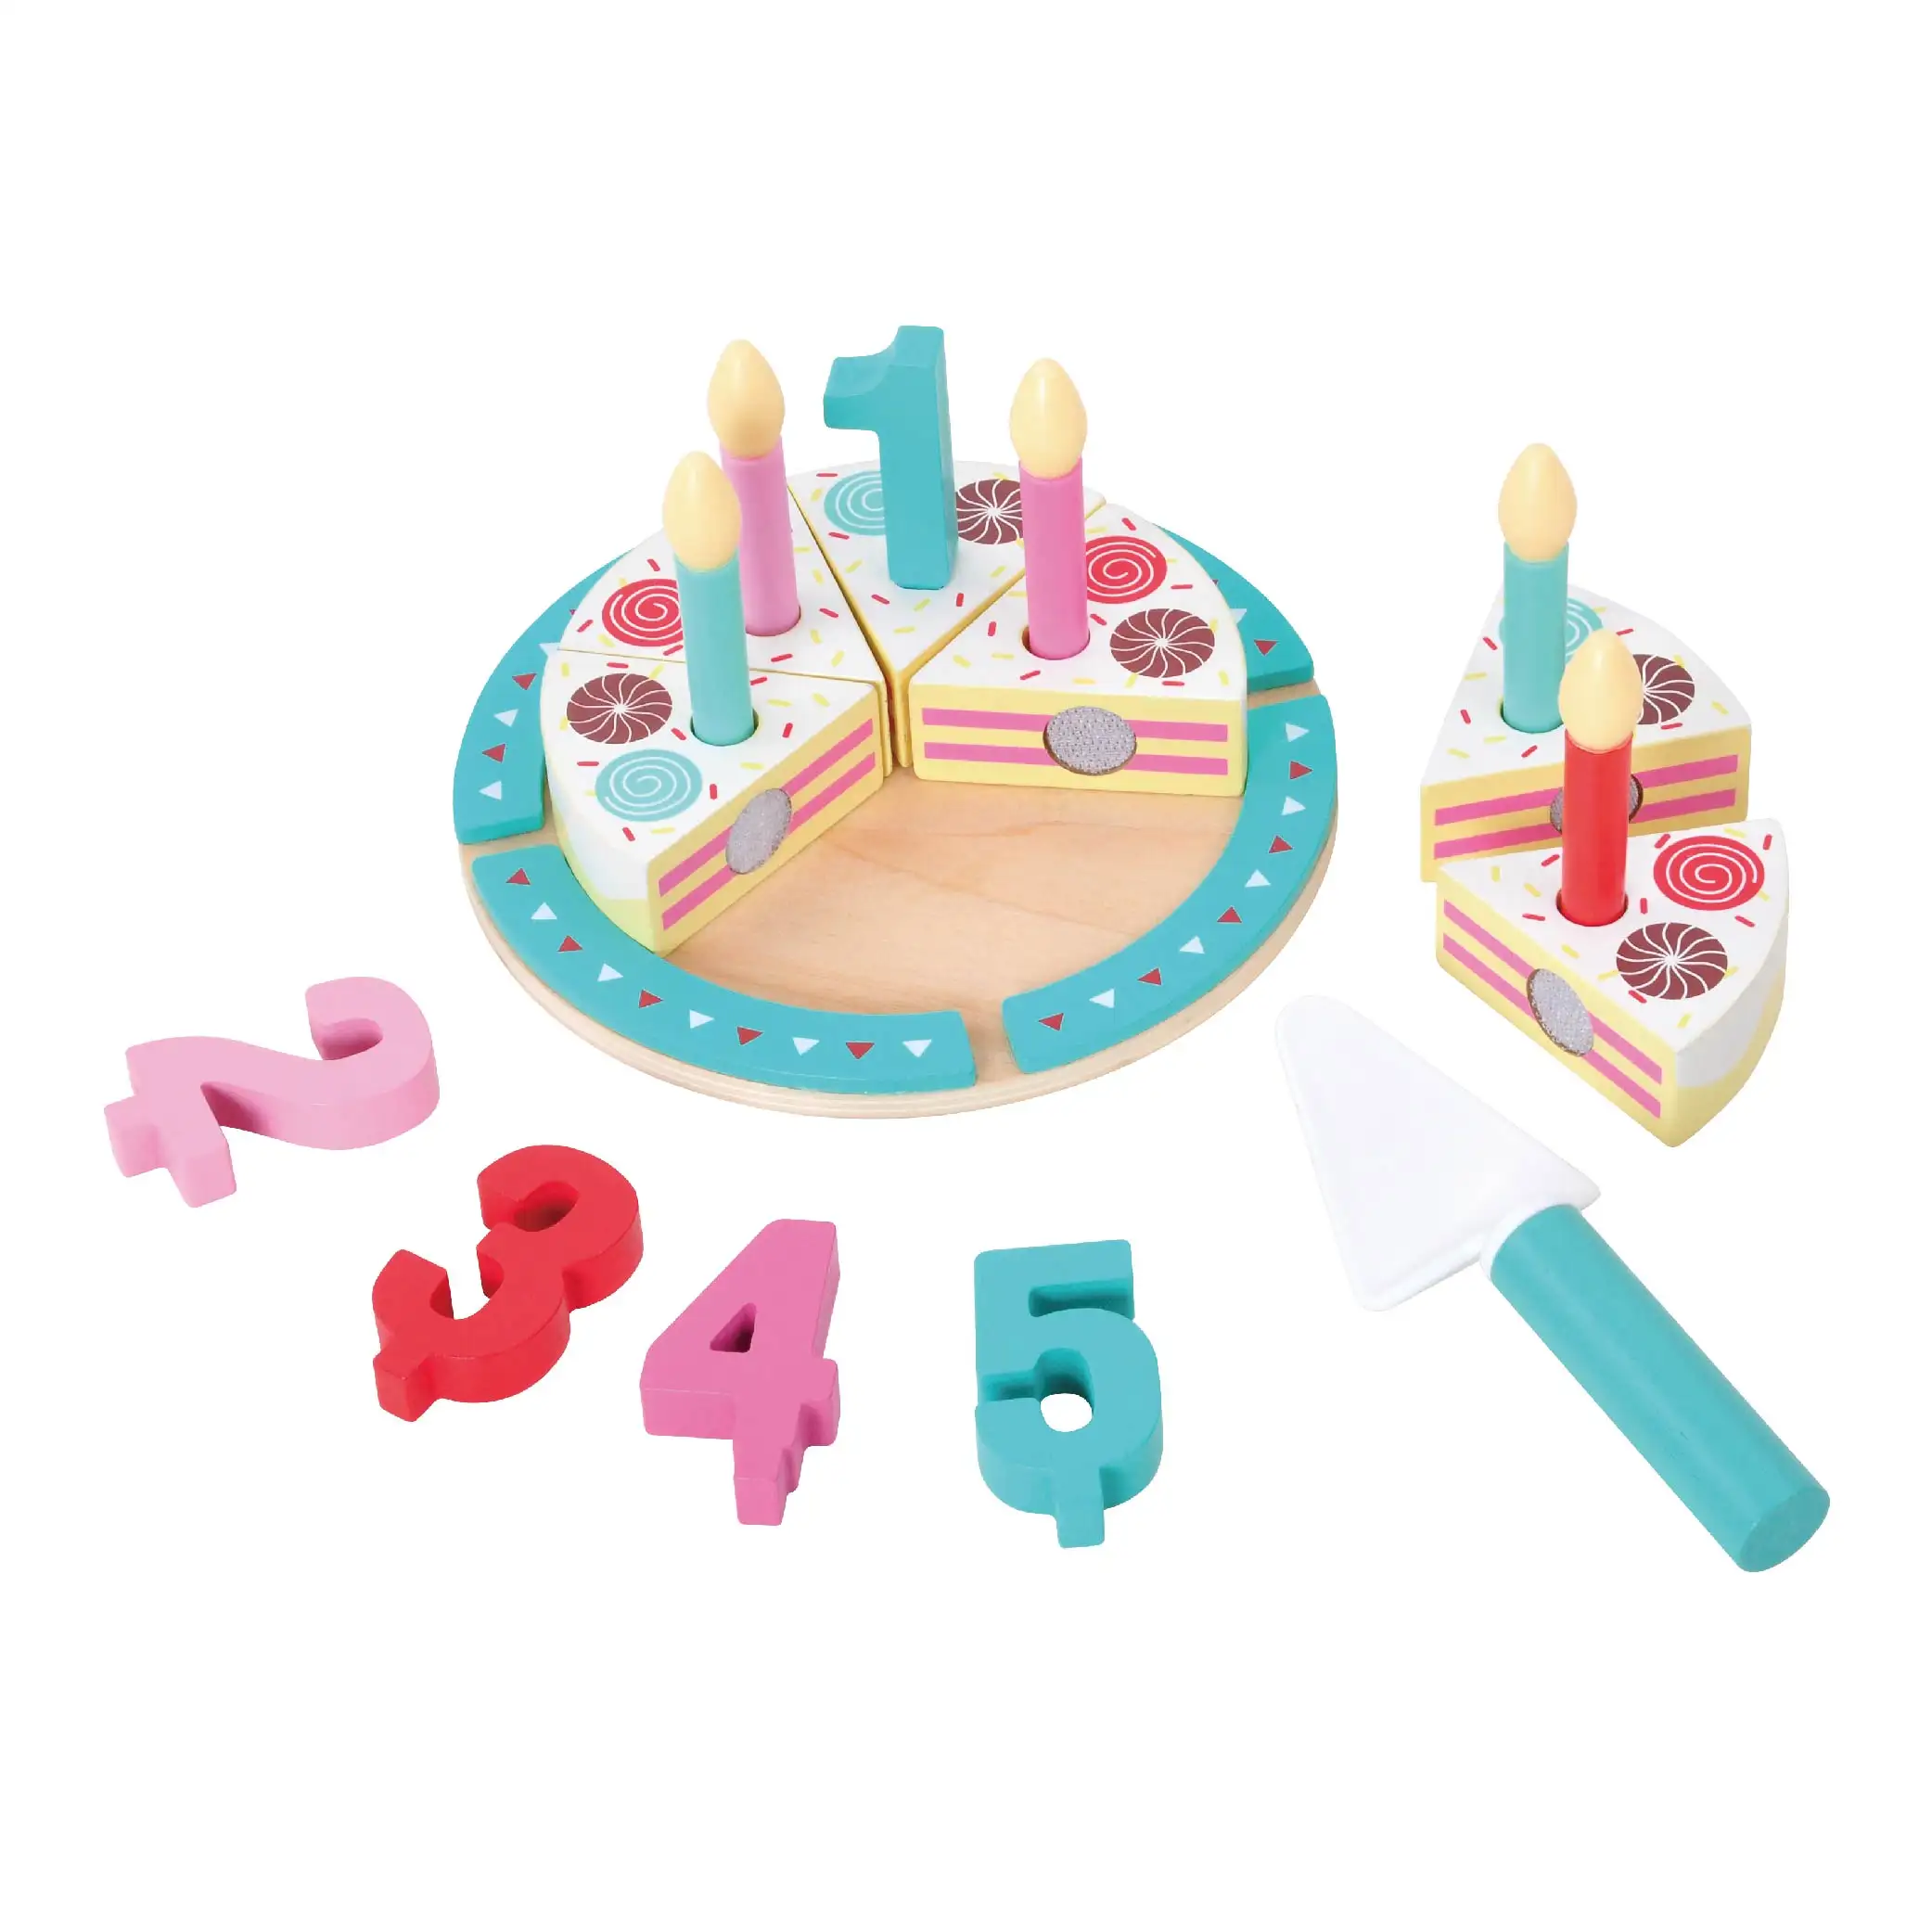 Alta qualifica bambina educativa felice Kinder Spielzeug giocattoli in legno torta di compleanno per bambini